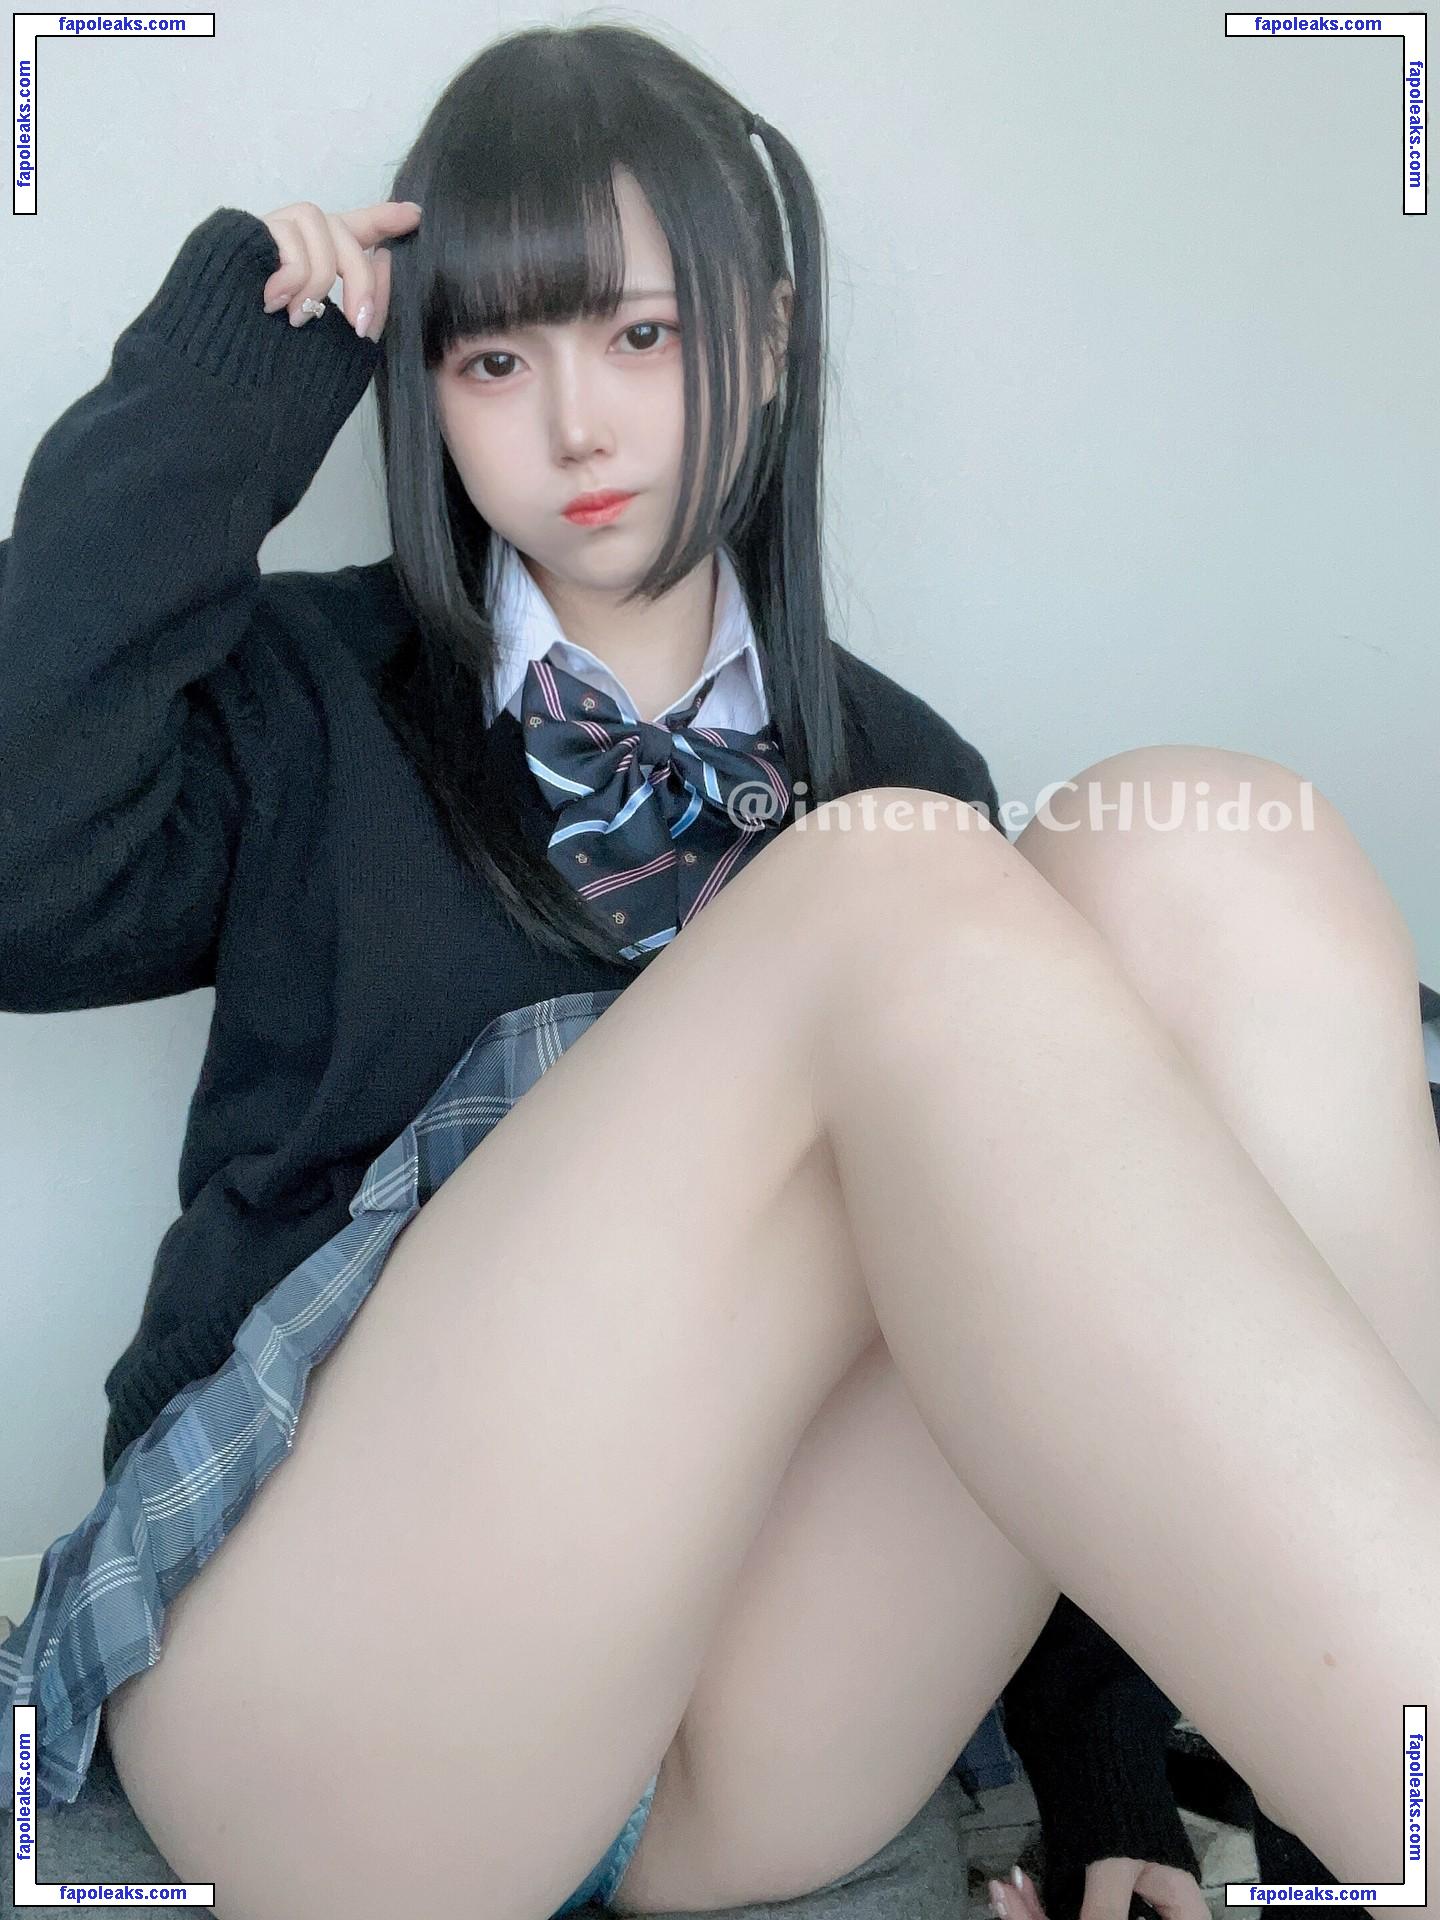 InterneCHUidol / shiromiyayuki / 憂貴 nude photo #0048 from OnlyFans